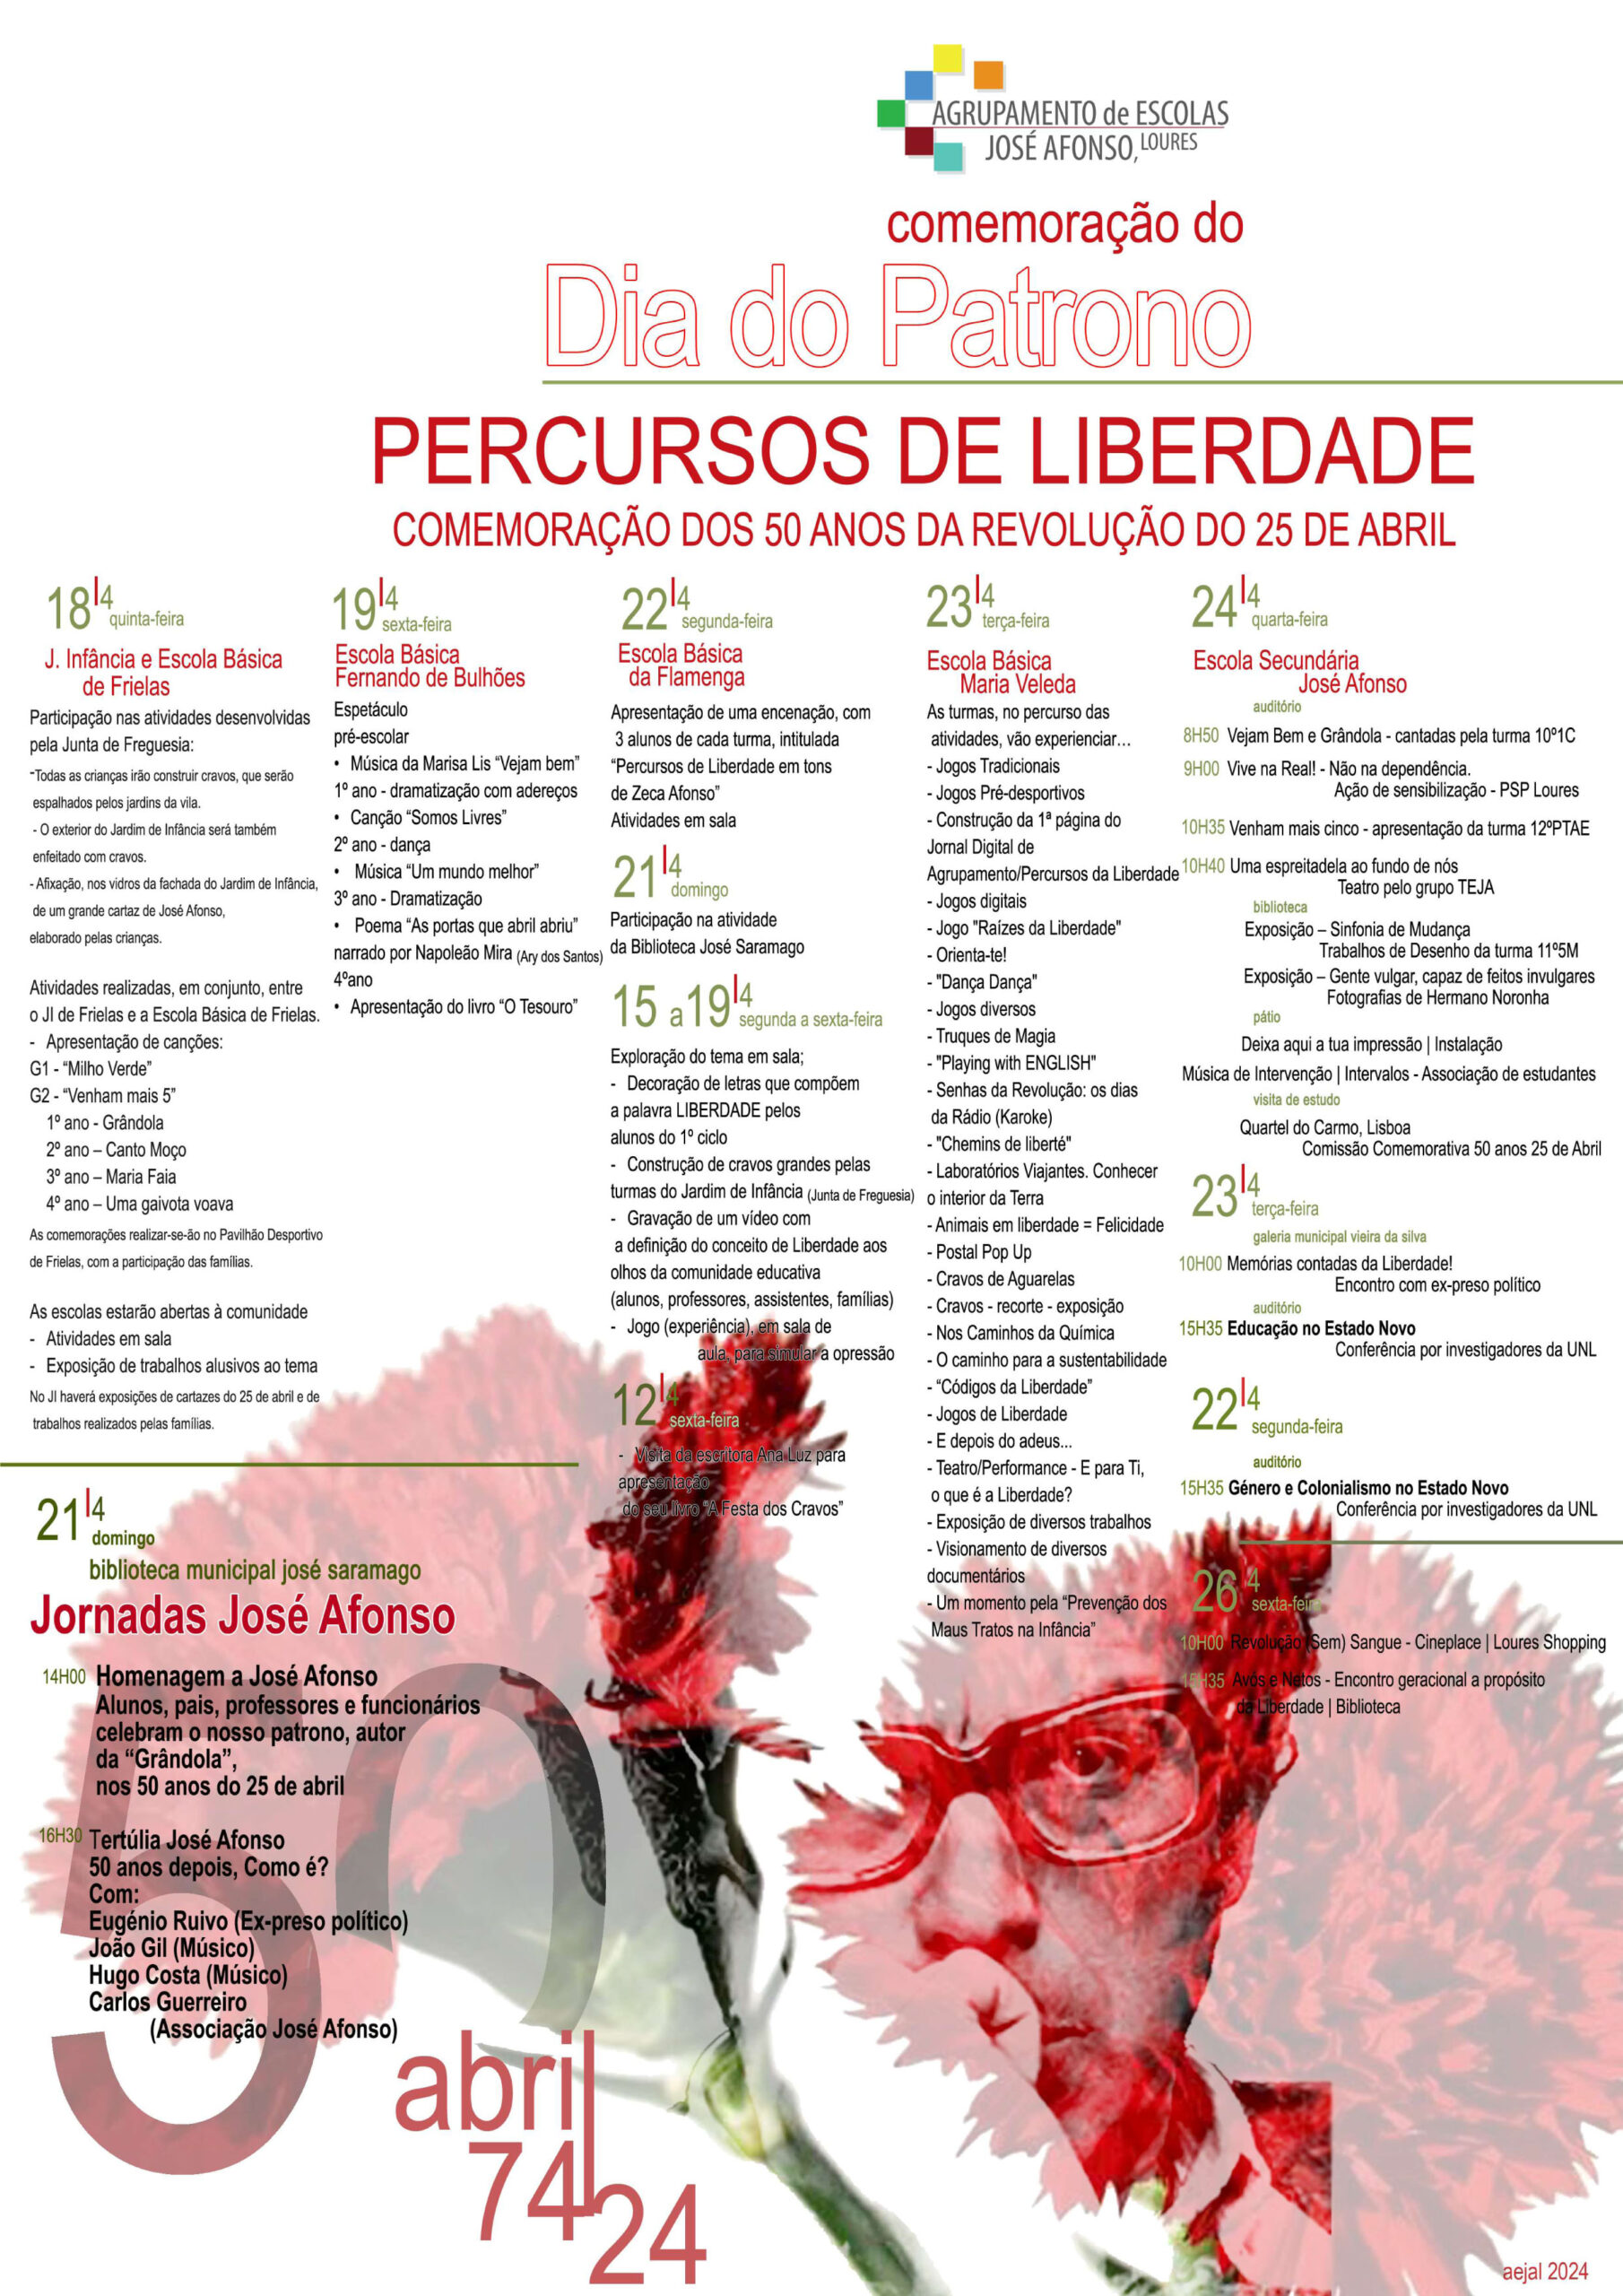 Capa do Evento Percursos de Liberdade - Dia  do Patrono - Comemoração dos 50 anos do 25 abril